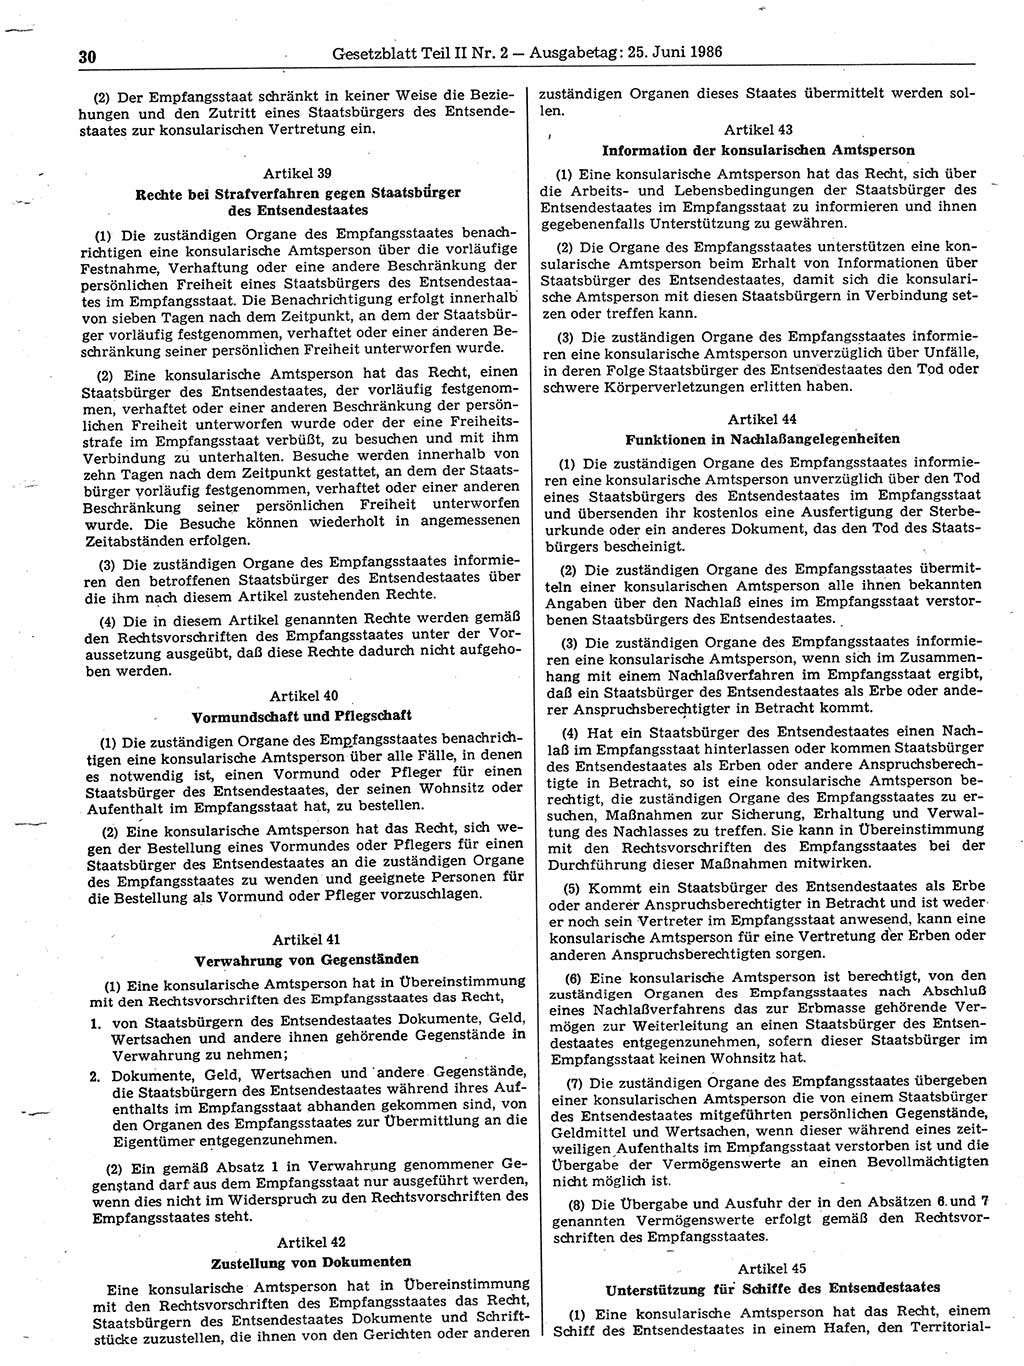 Gesetzblatt (GBl.) der Deutschen Demokratischen Republik (DDR) Teil ⅠⅠ 1986, Seite 30 (GBl. DDR ⅠⅠ 1986, S. 30)